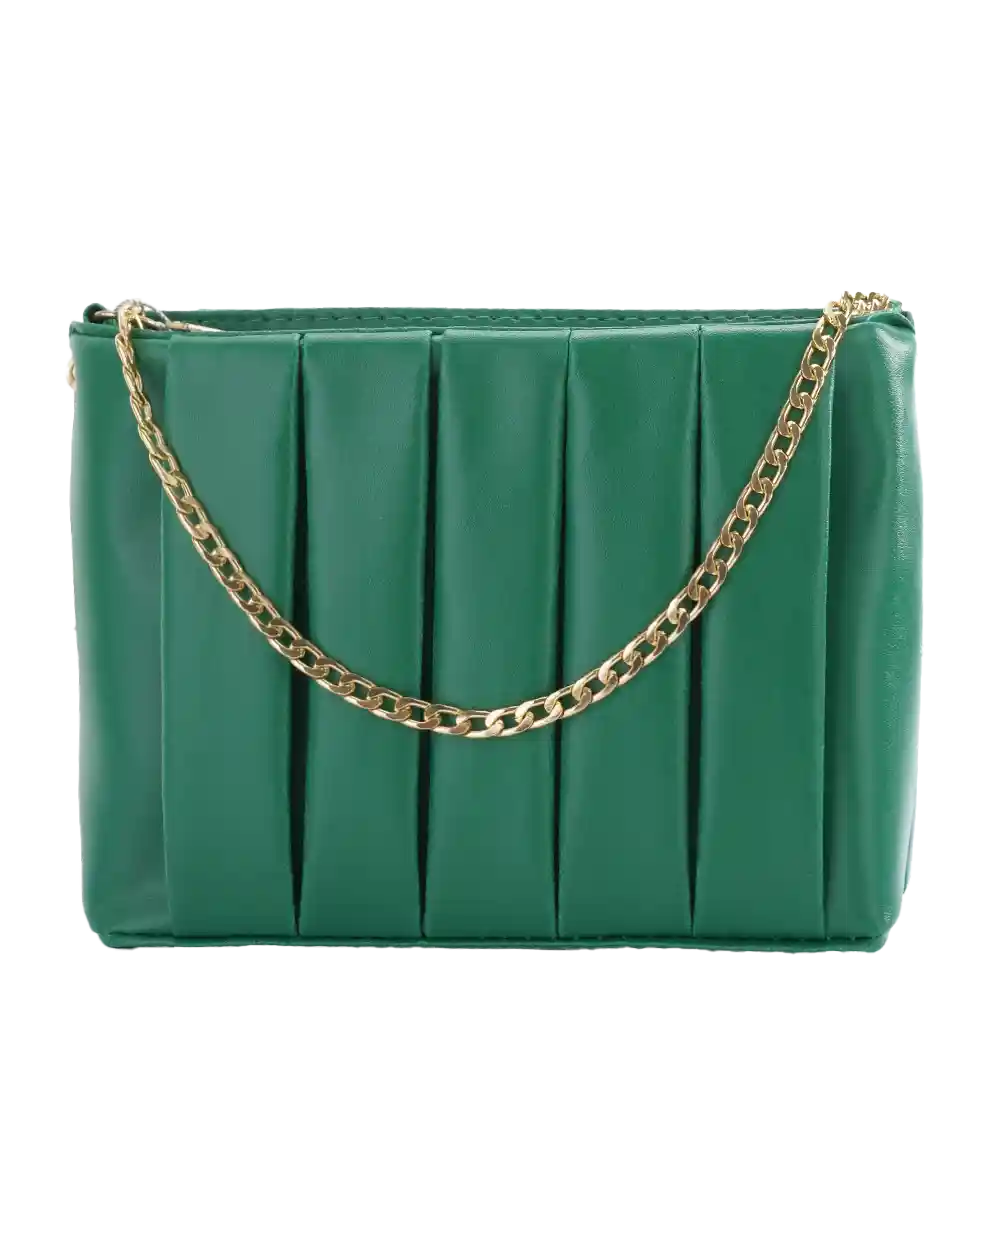 خرید کیف دوشی زنانه چرم طرح زارا مدل 2031 جنس چرم صنعتی مصنوعی جادار در رنگ های سبز به همراه ارسال رایگان